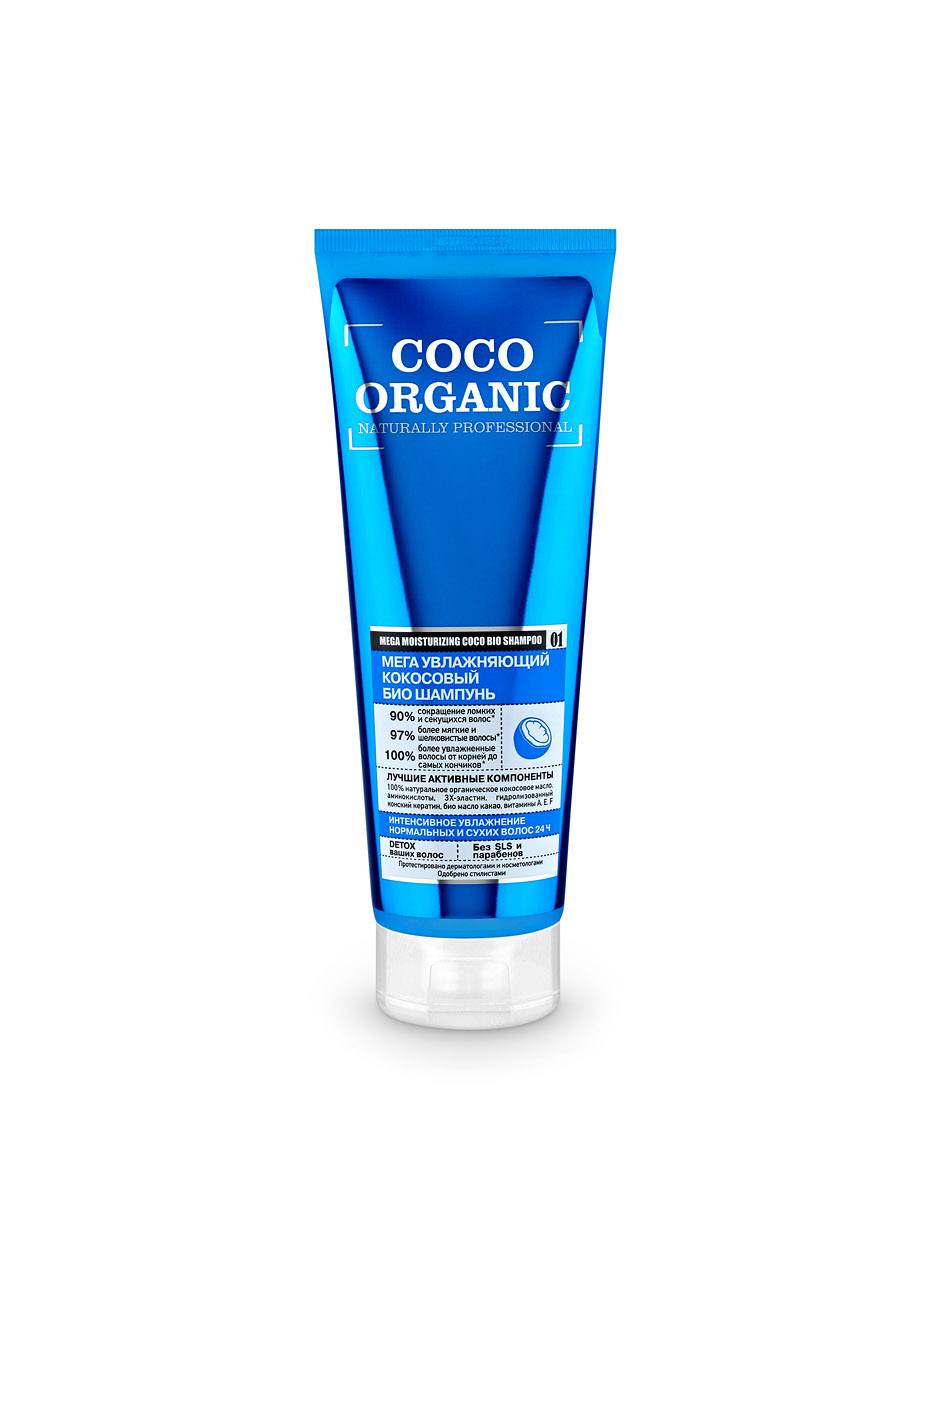 Organic naturally professional Шампунь для волос Мега увлажняющий кокосовый, 250 мл